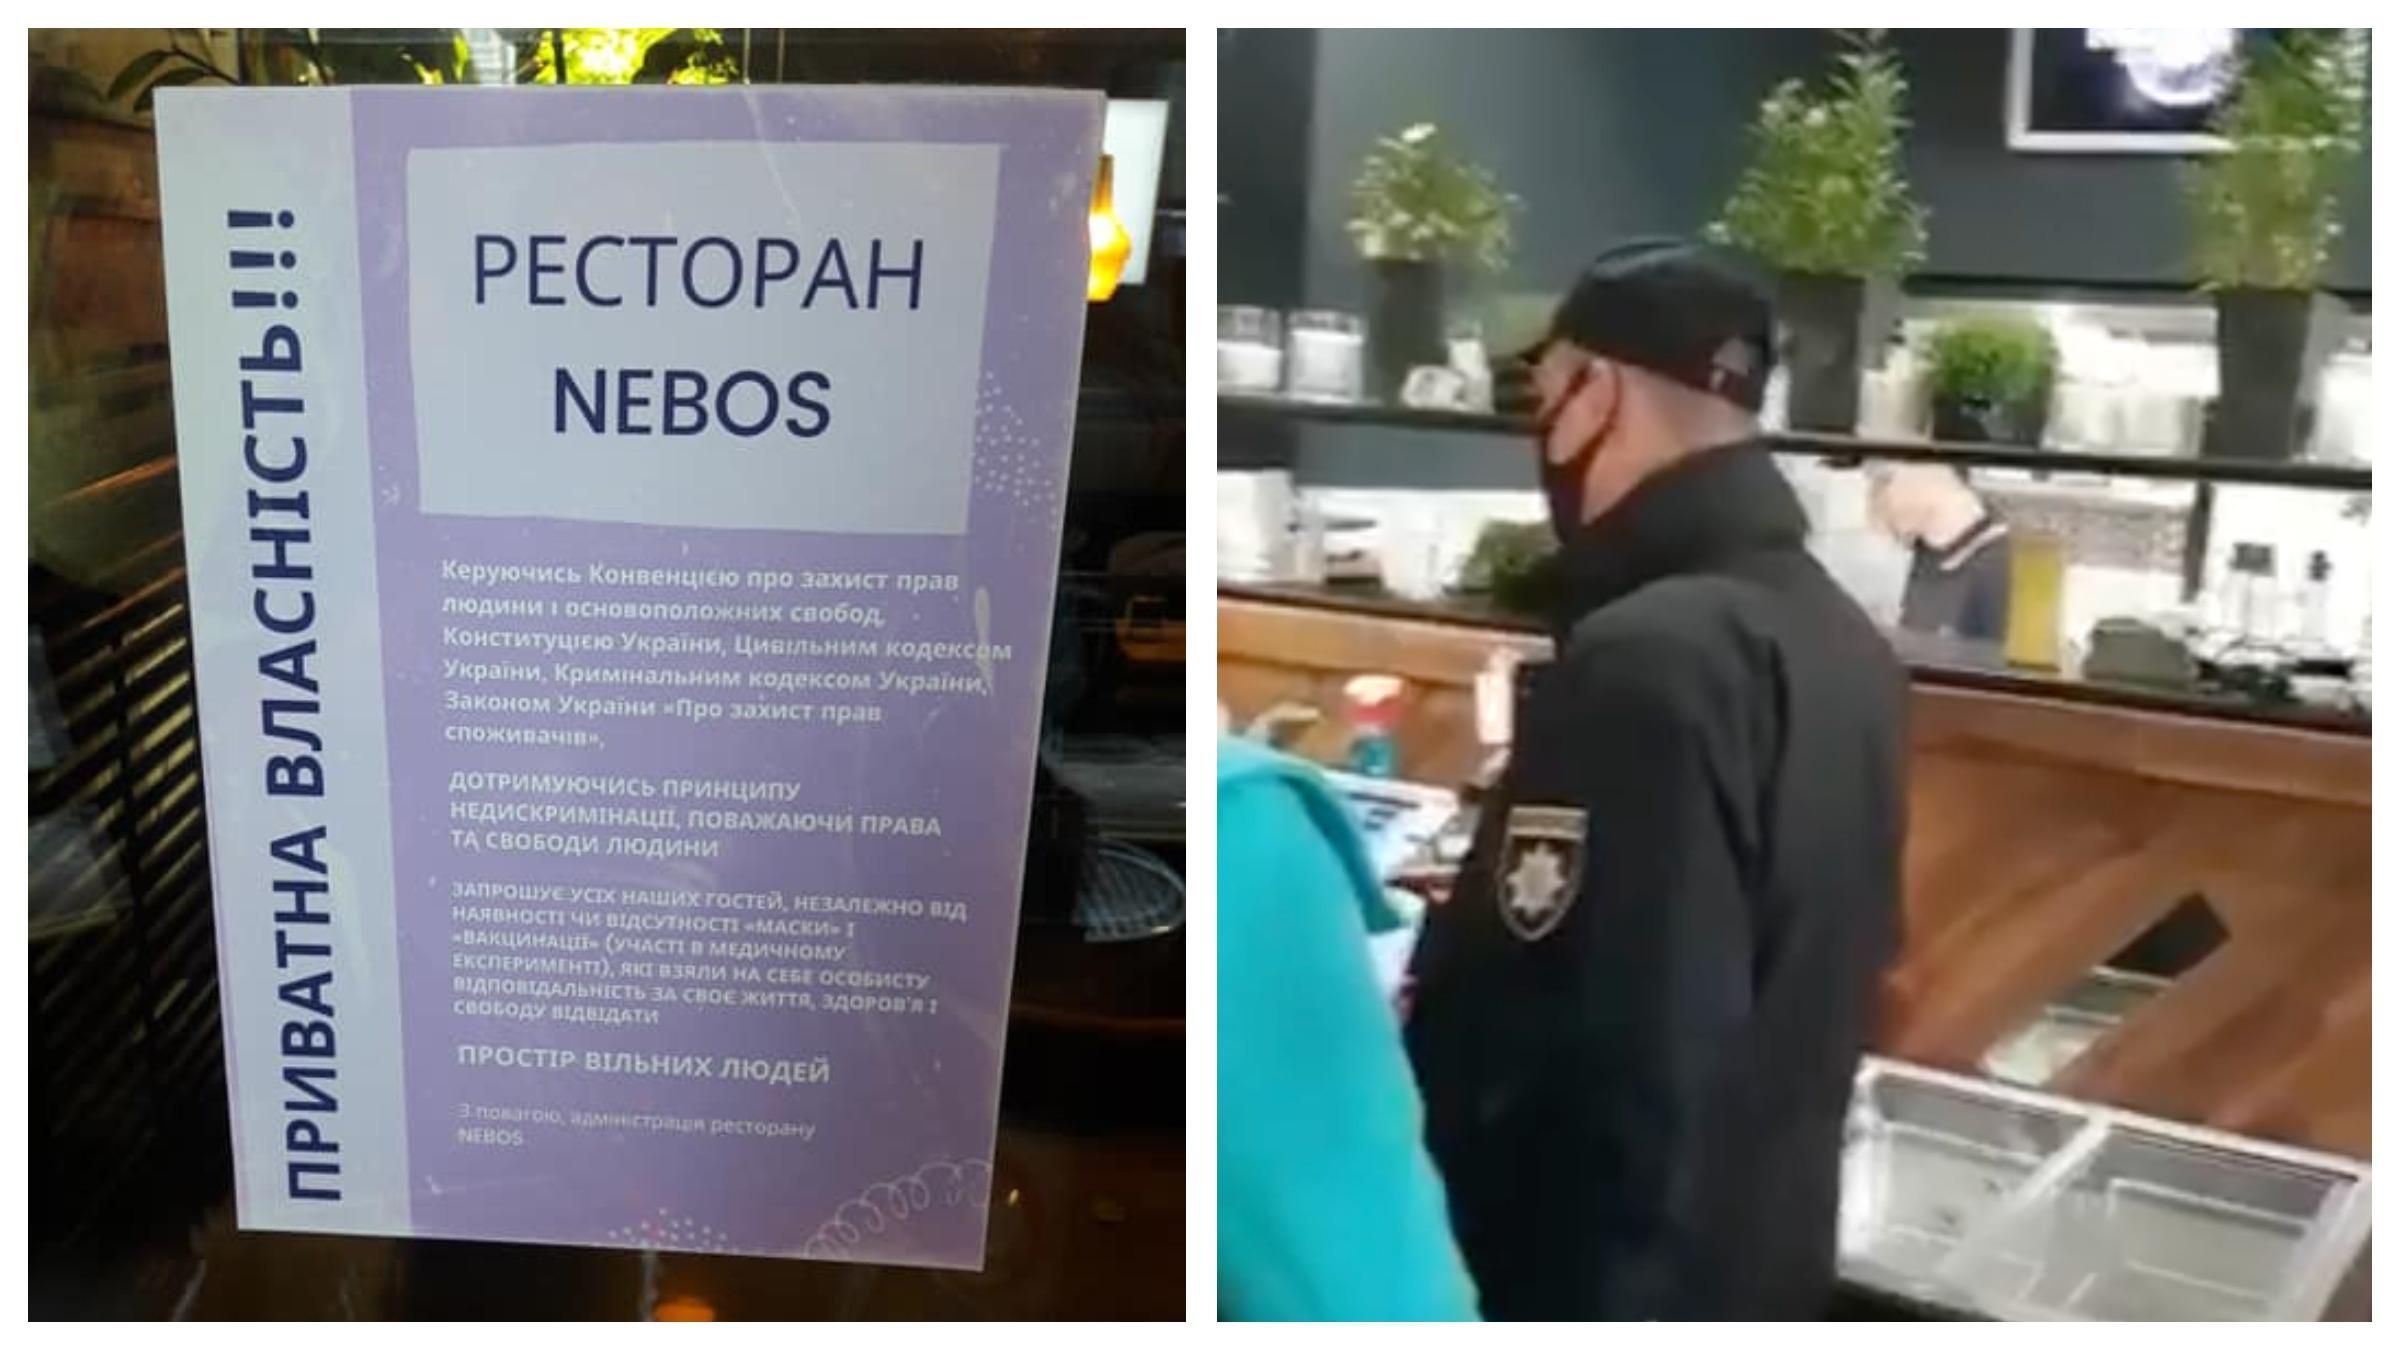 Скандальний "простір вільних людей" відвідала поліція: ресторану загрожує відчутний штраф - Новини Києва - 24 Канал